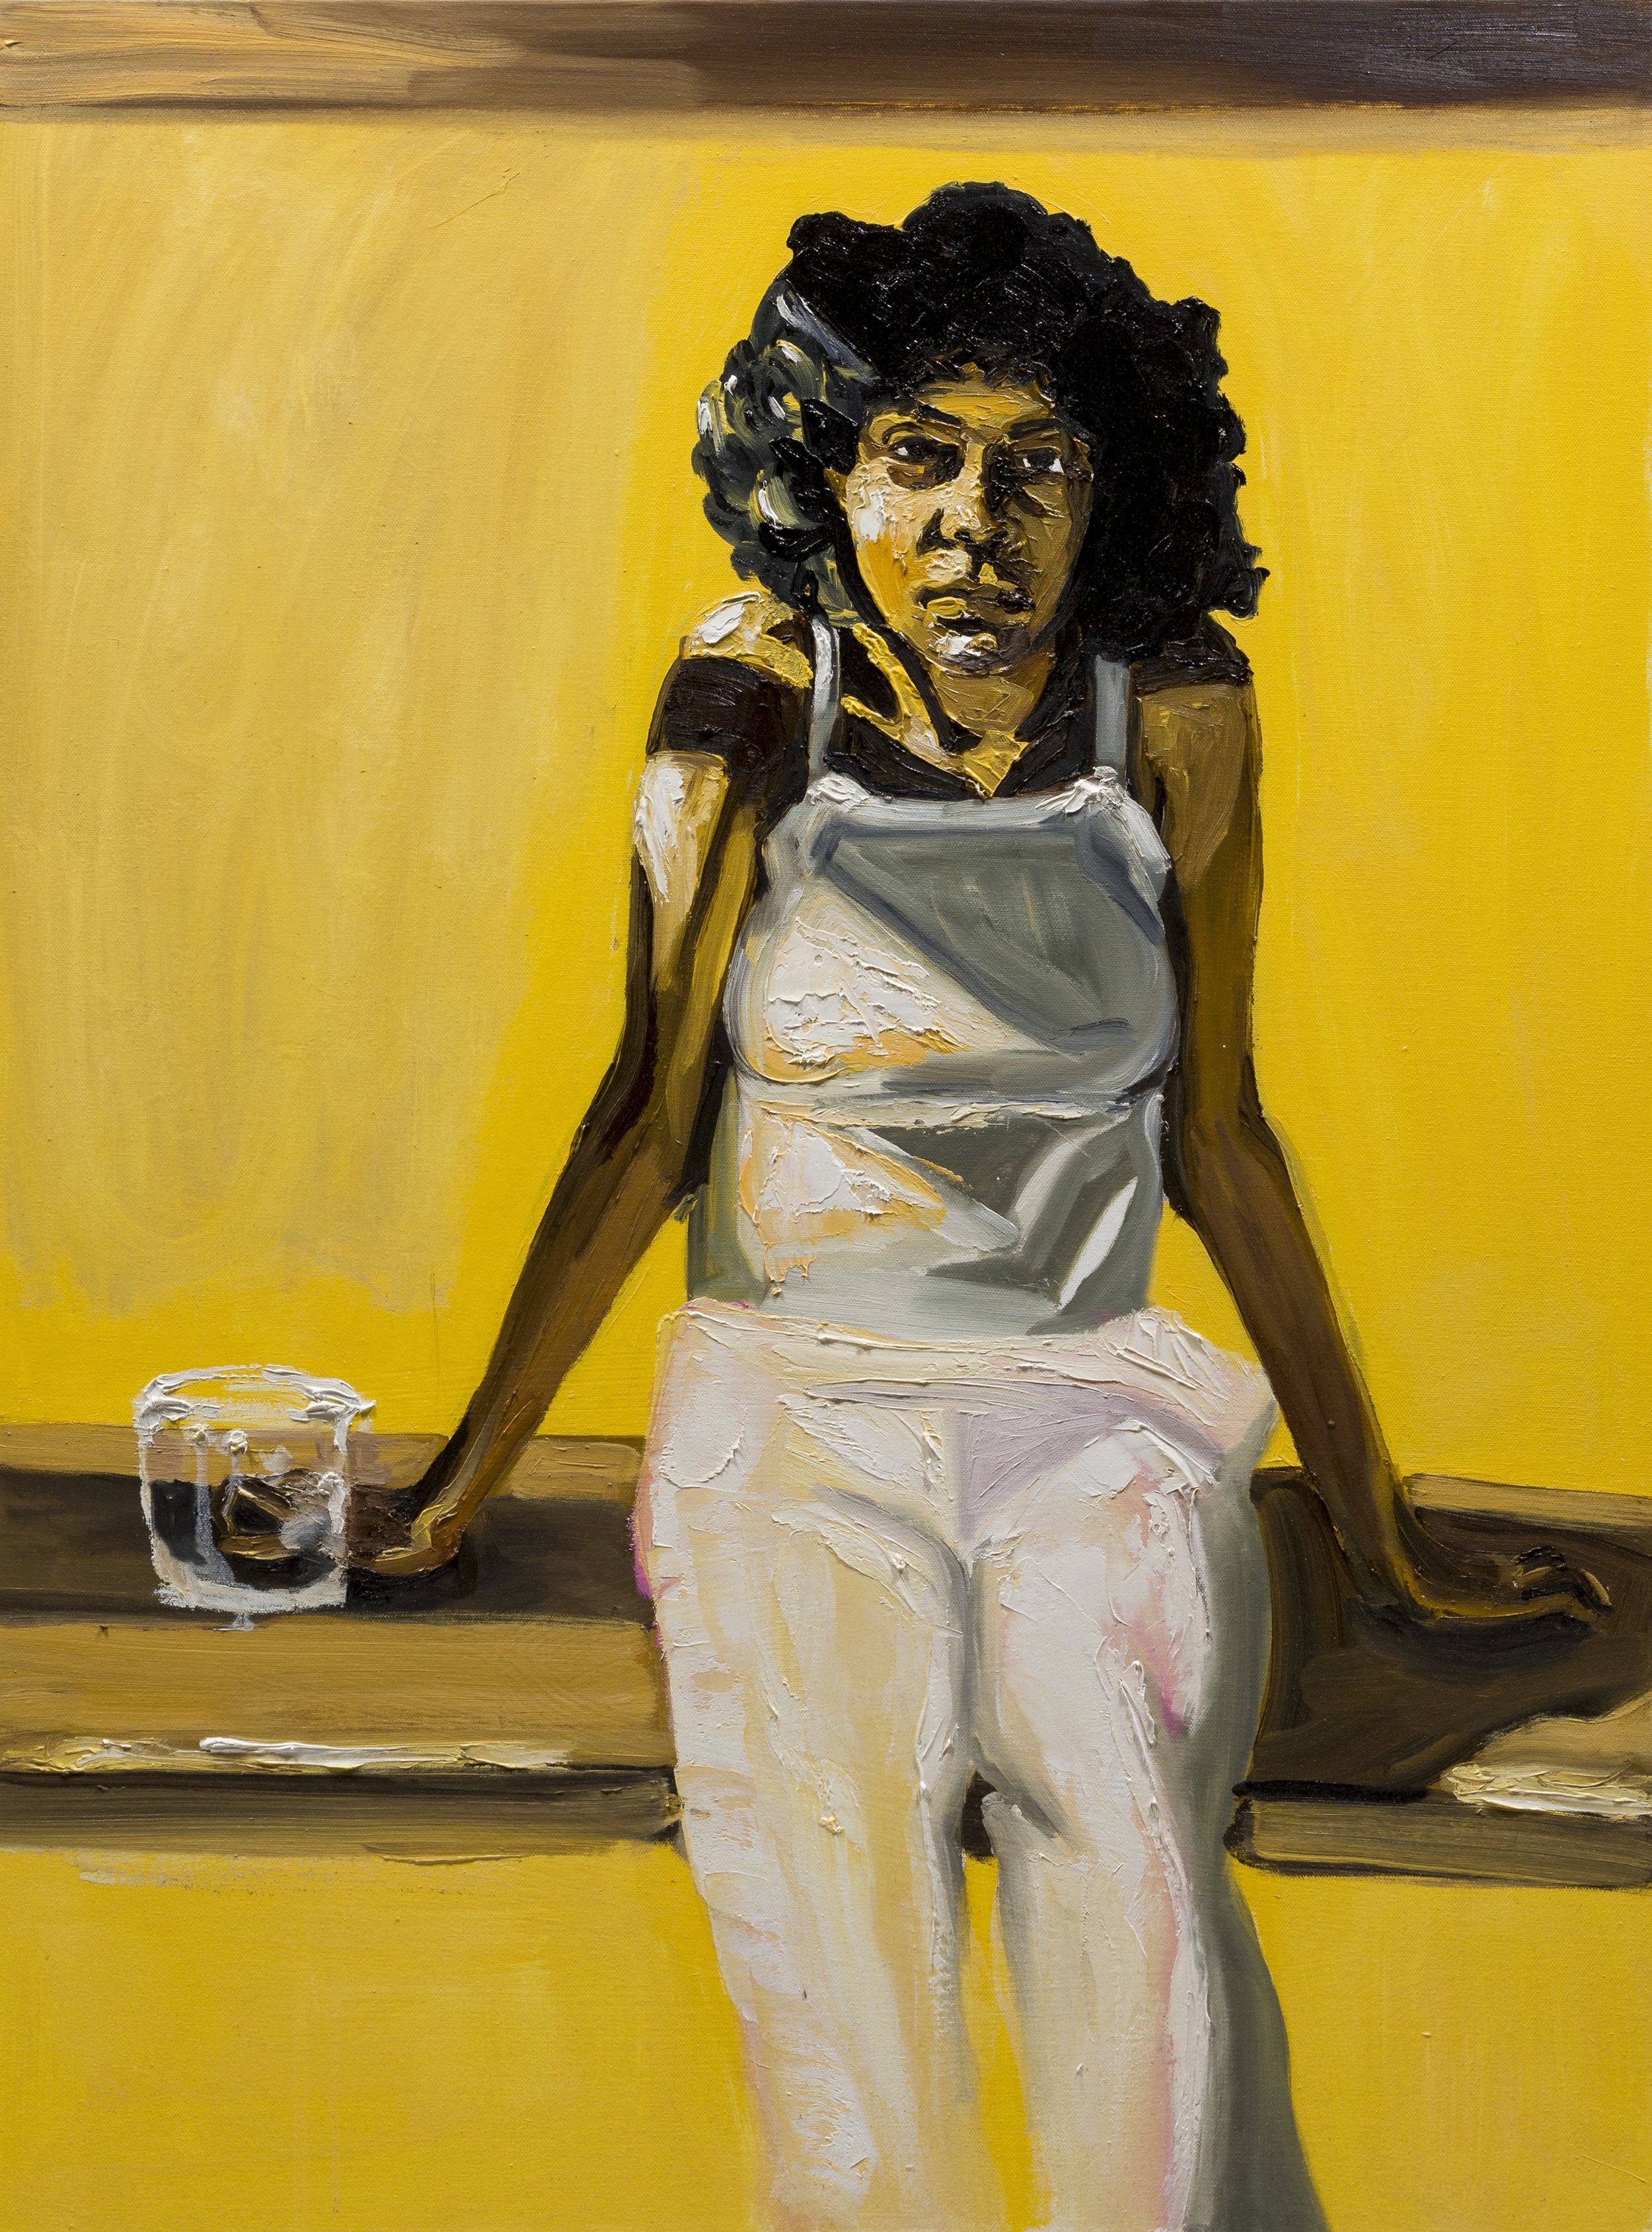   Cousin Loretta   Oil, oil stick on canvas  40 x 30 in  101.6 x 76.2 cm  2021   